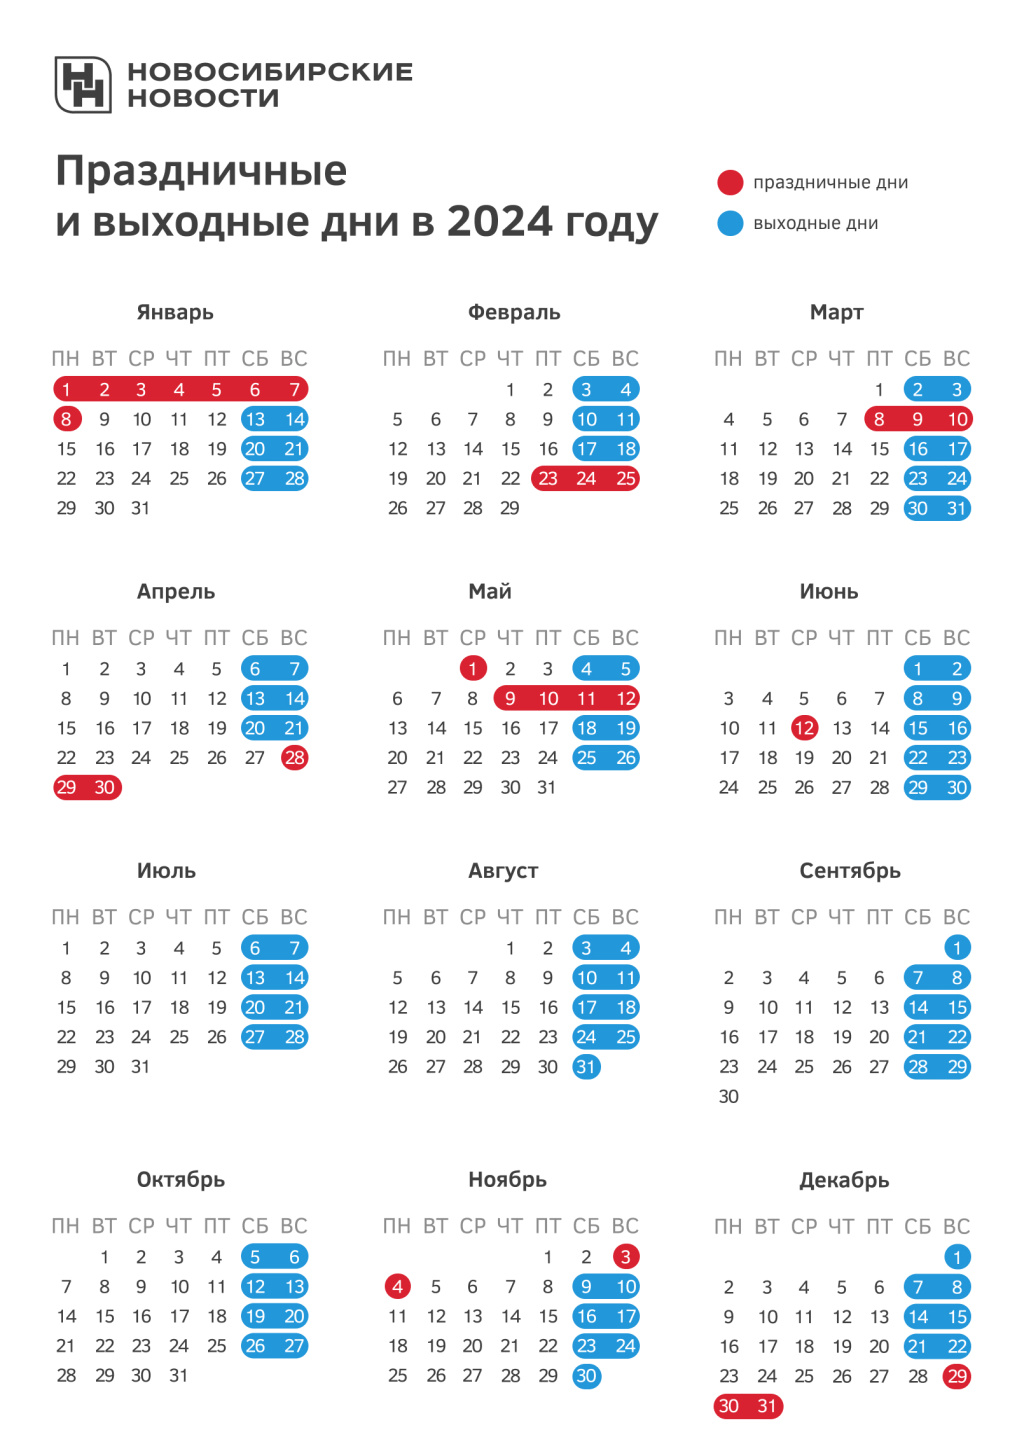 Как переносятся праздники в 2024 году